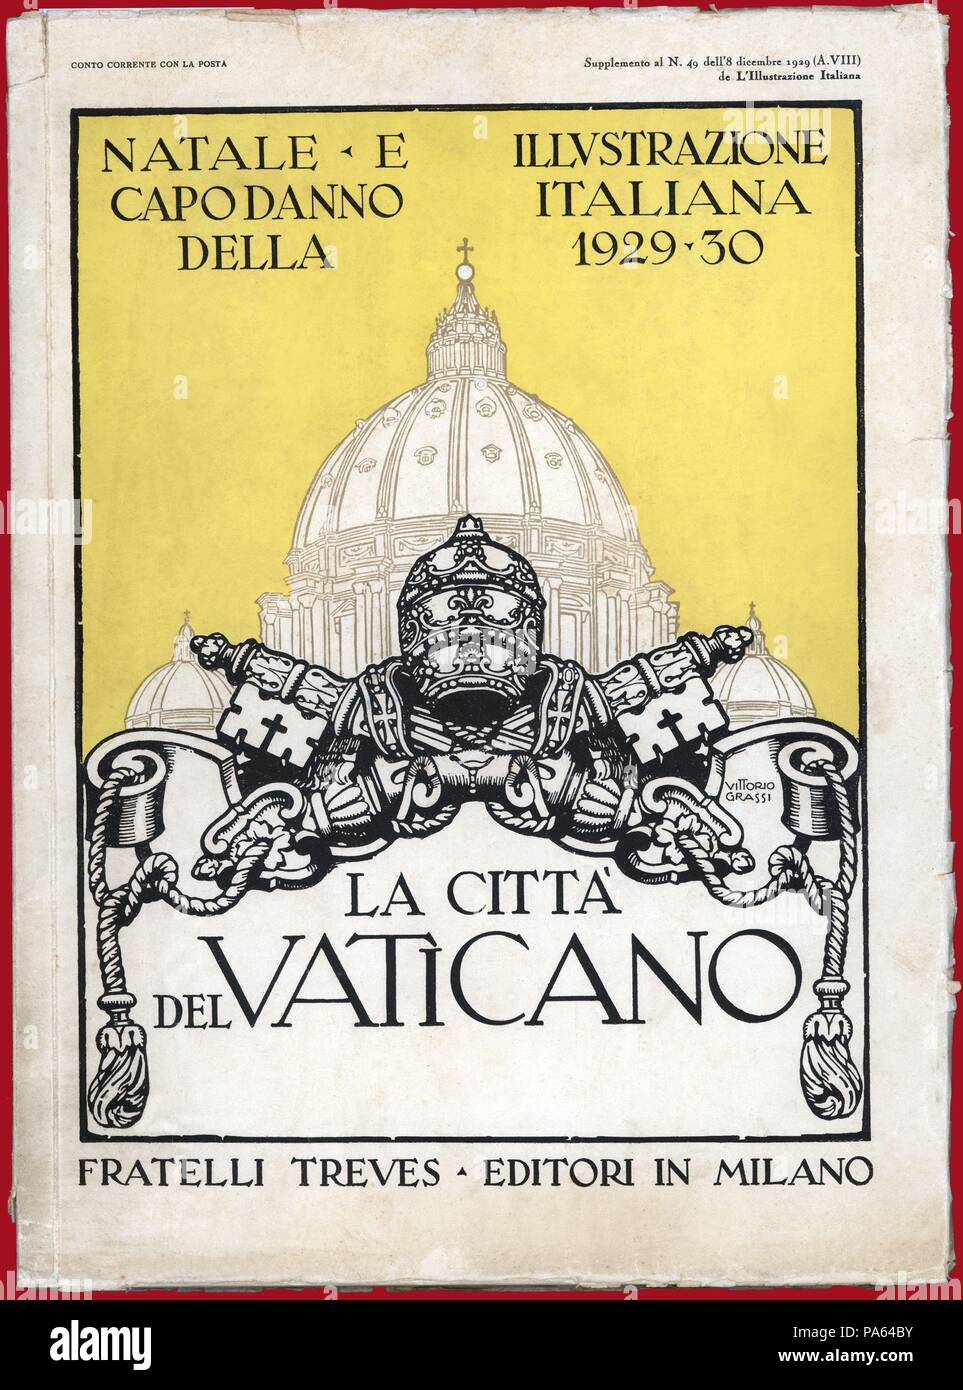 Portada de la revista Illustrazione Italiana, dedicada a la Ciudad del Vaticano. Milano, 1929-1930. Foto Stock